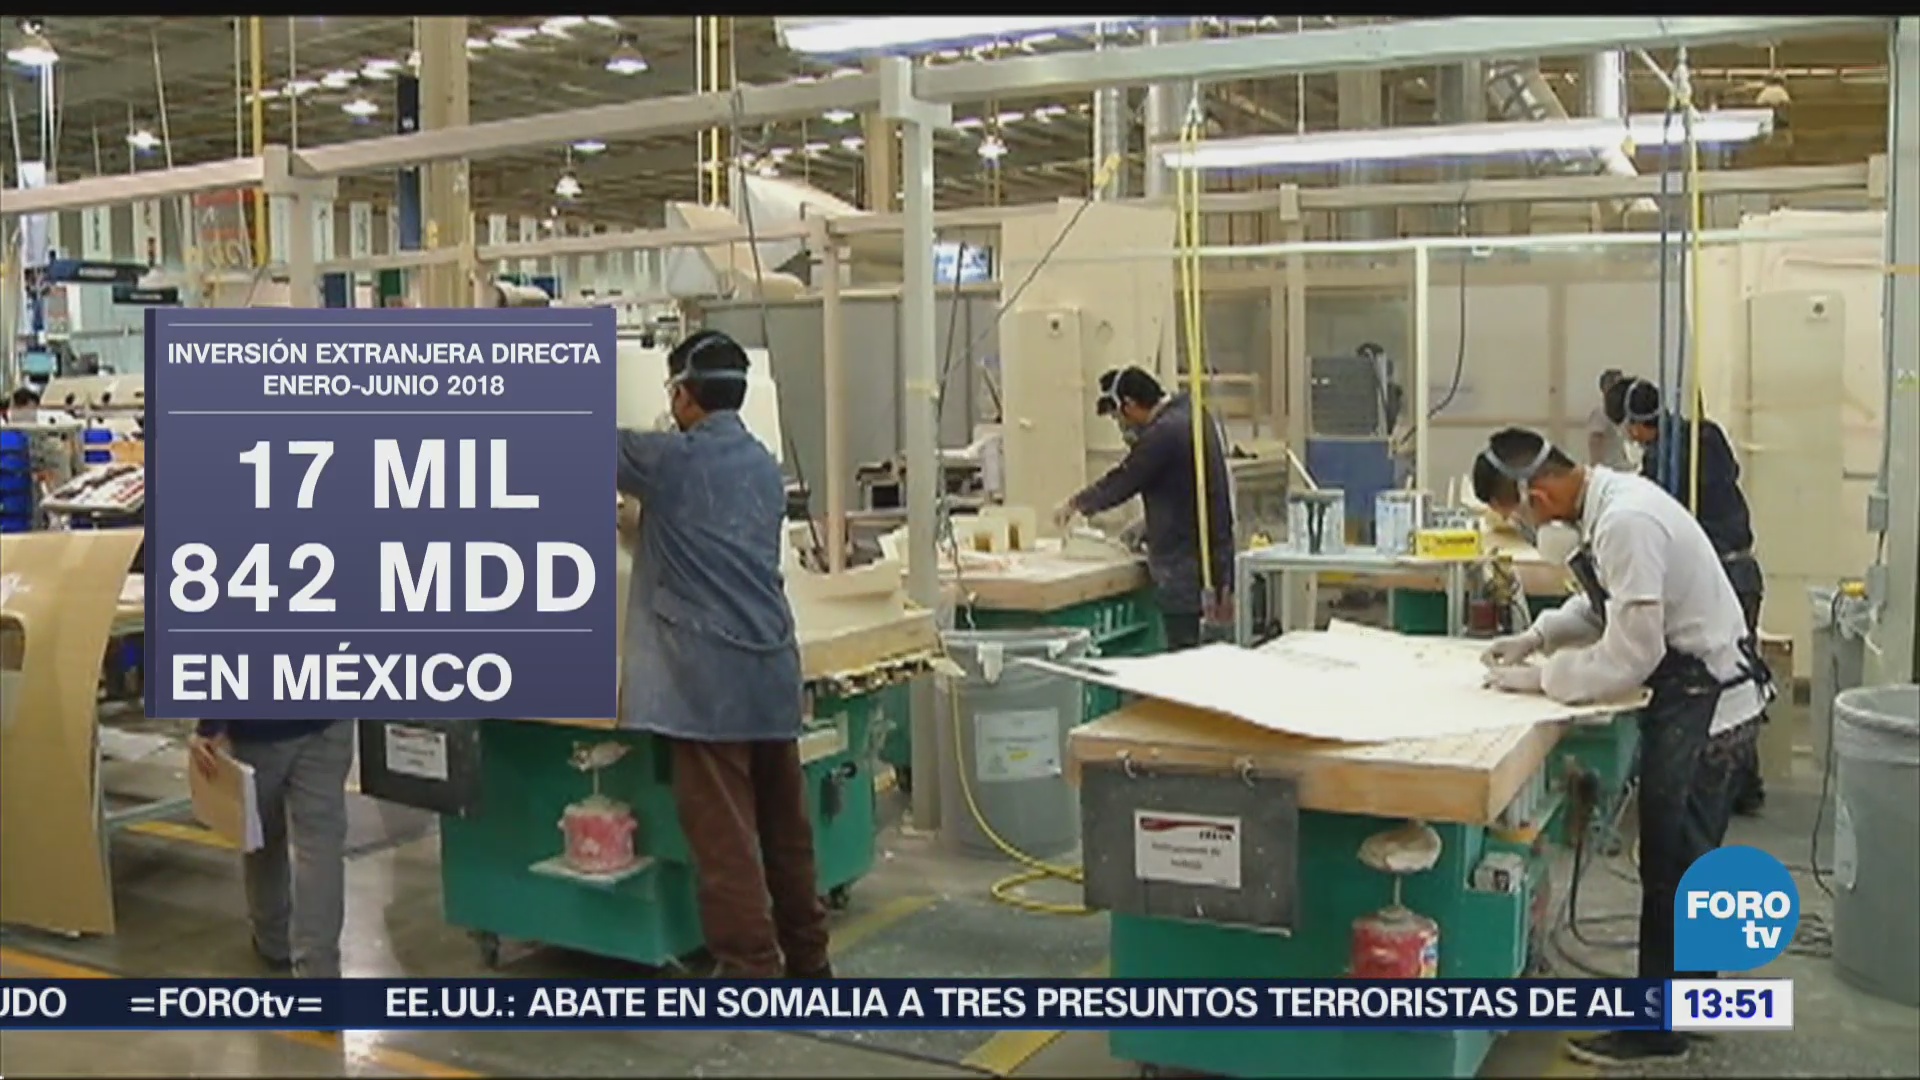 CDMX obtuvo cuarta parte de inversión extranjera en México